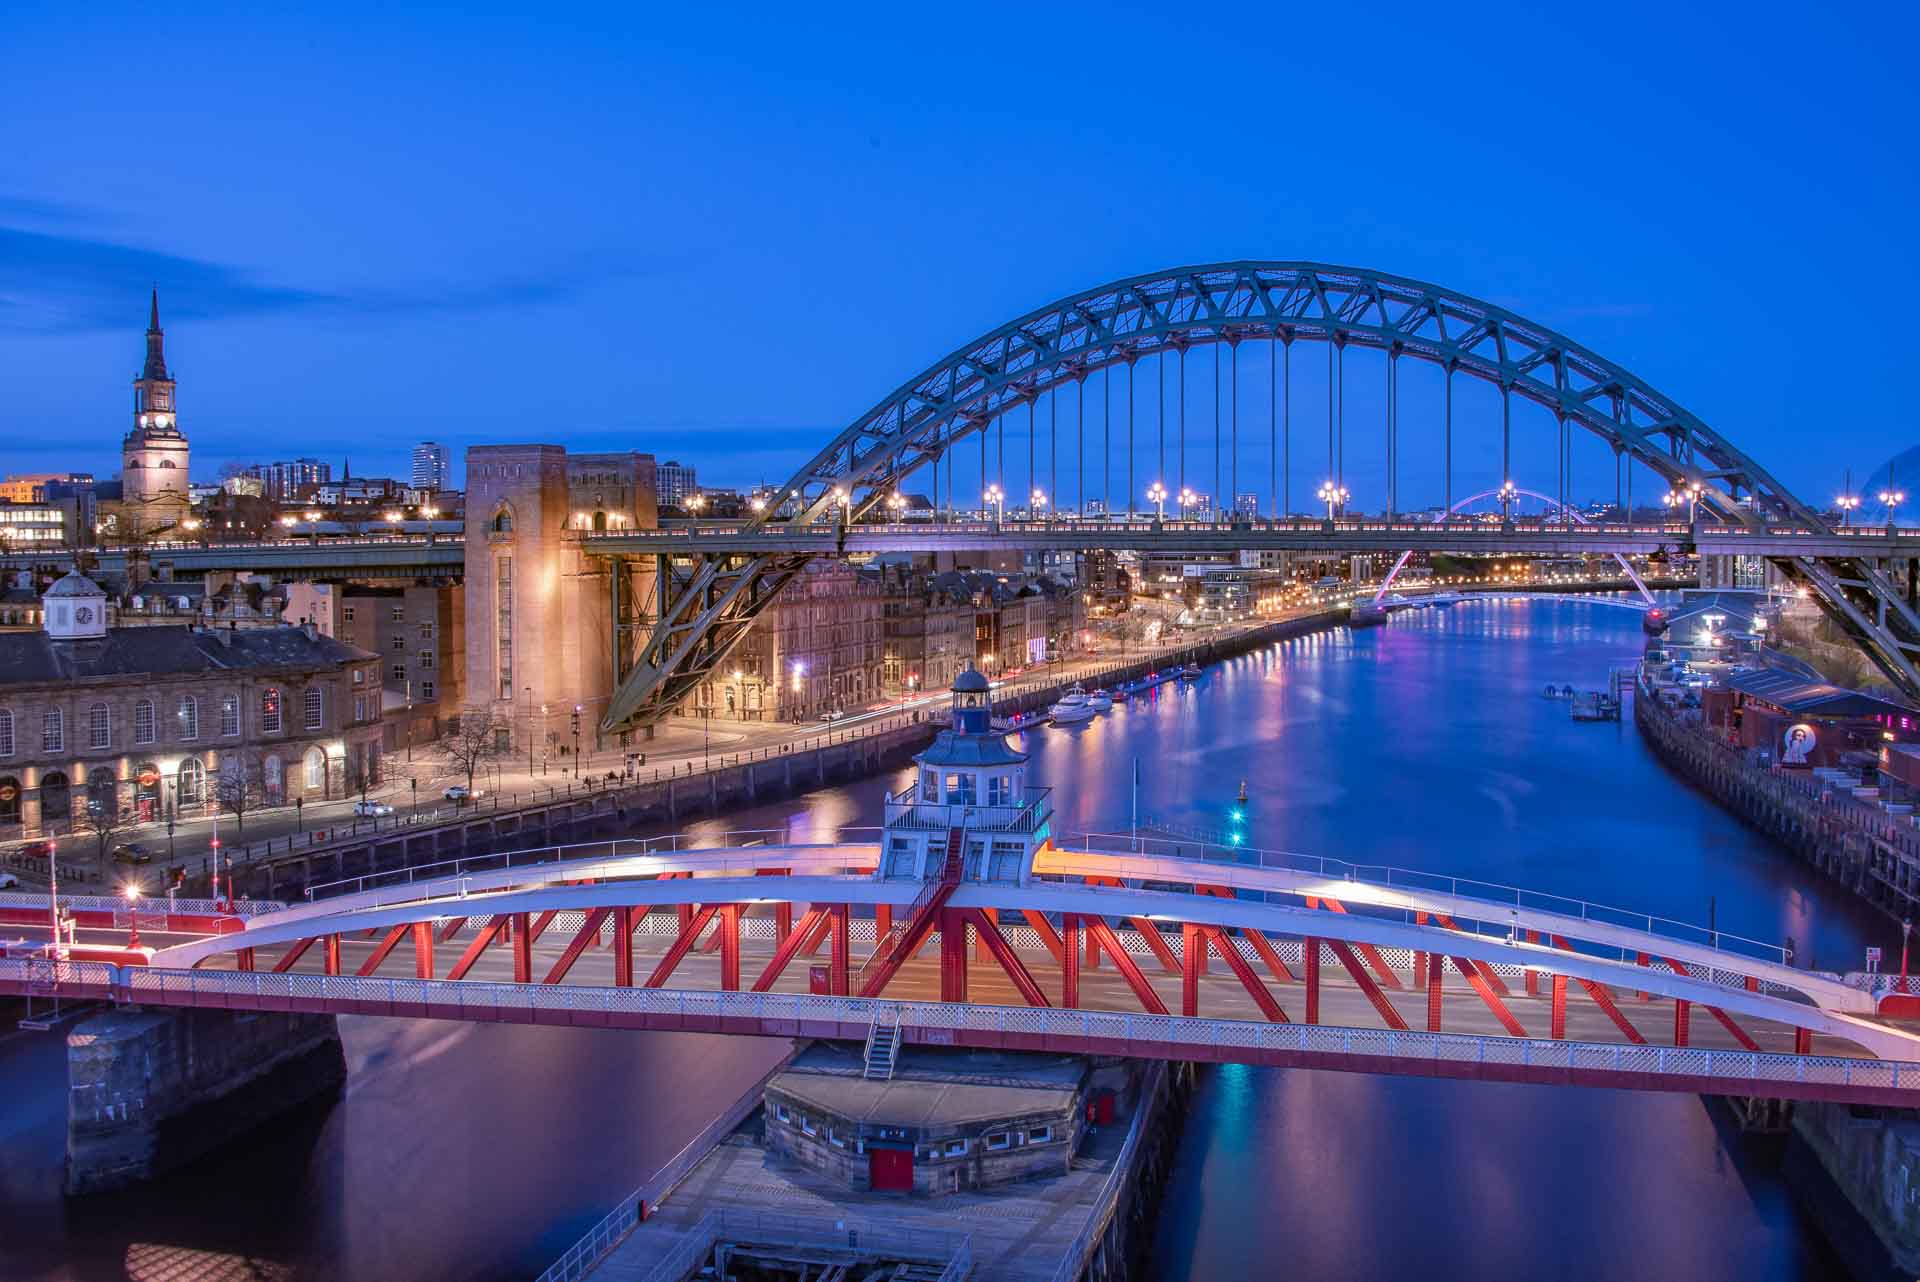 Tyne Bridge at night in Newcastle